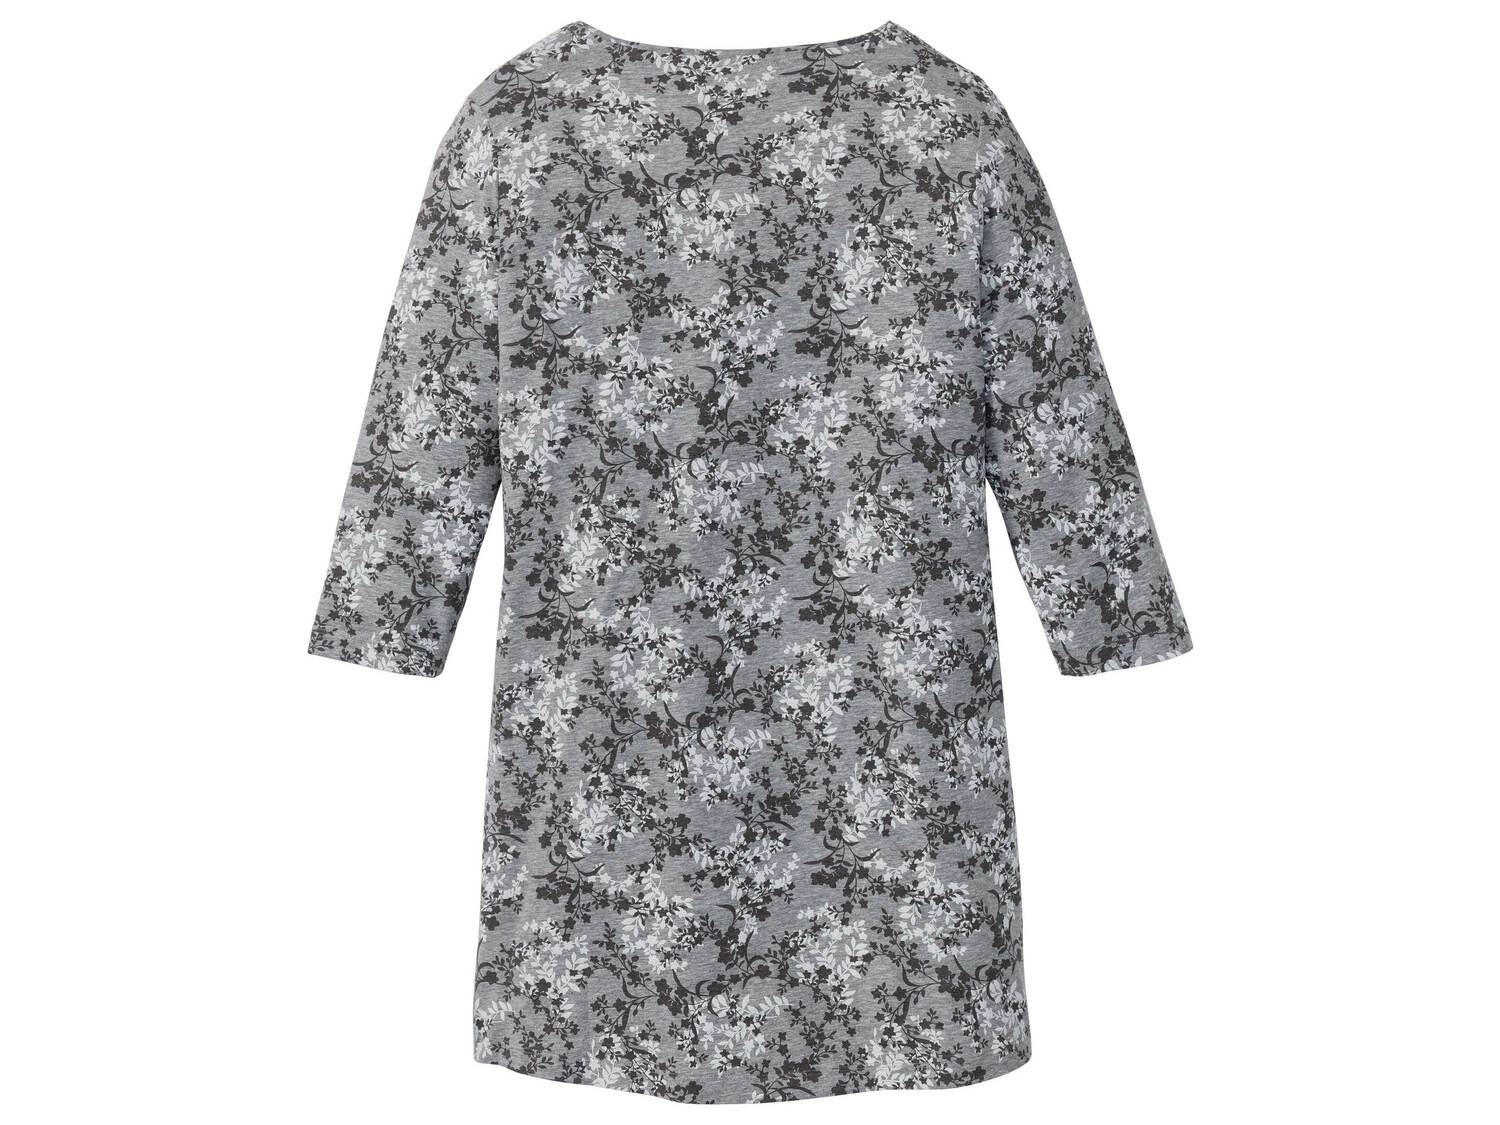 Koszula nocna damska Esmara Lingerie, cena 24,99 PLN 
- rozmiary: XS-L
- 85% bawełny, ...